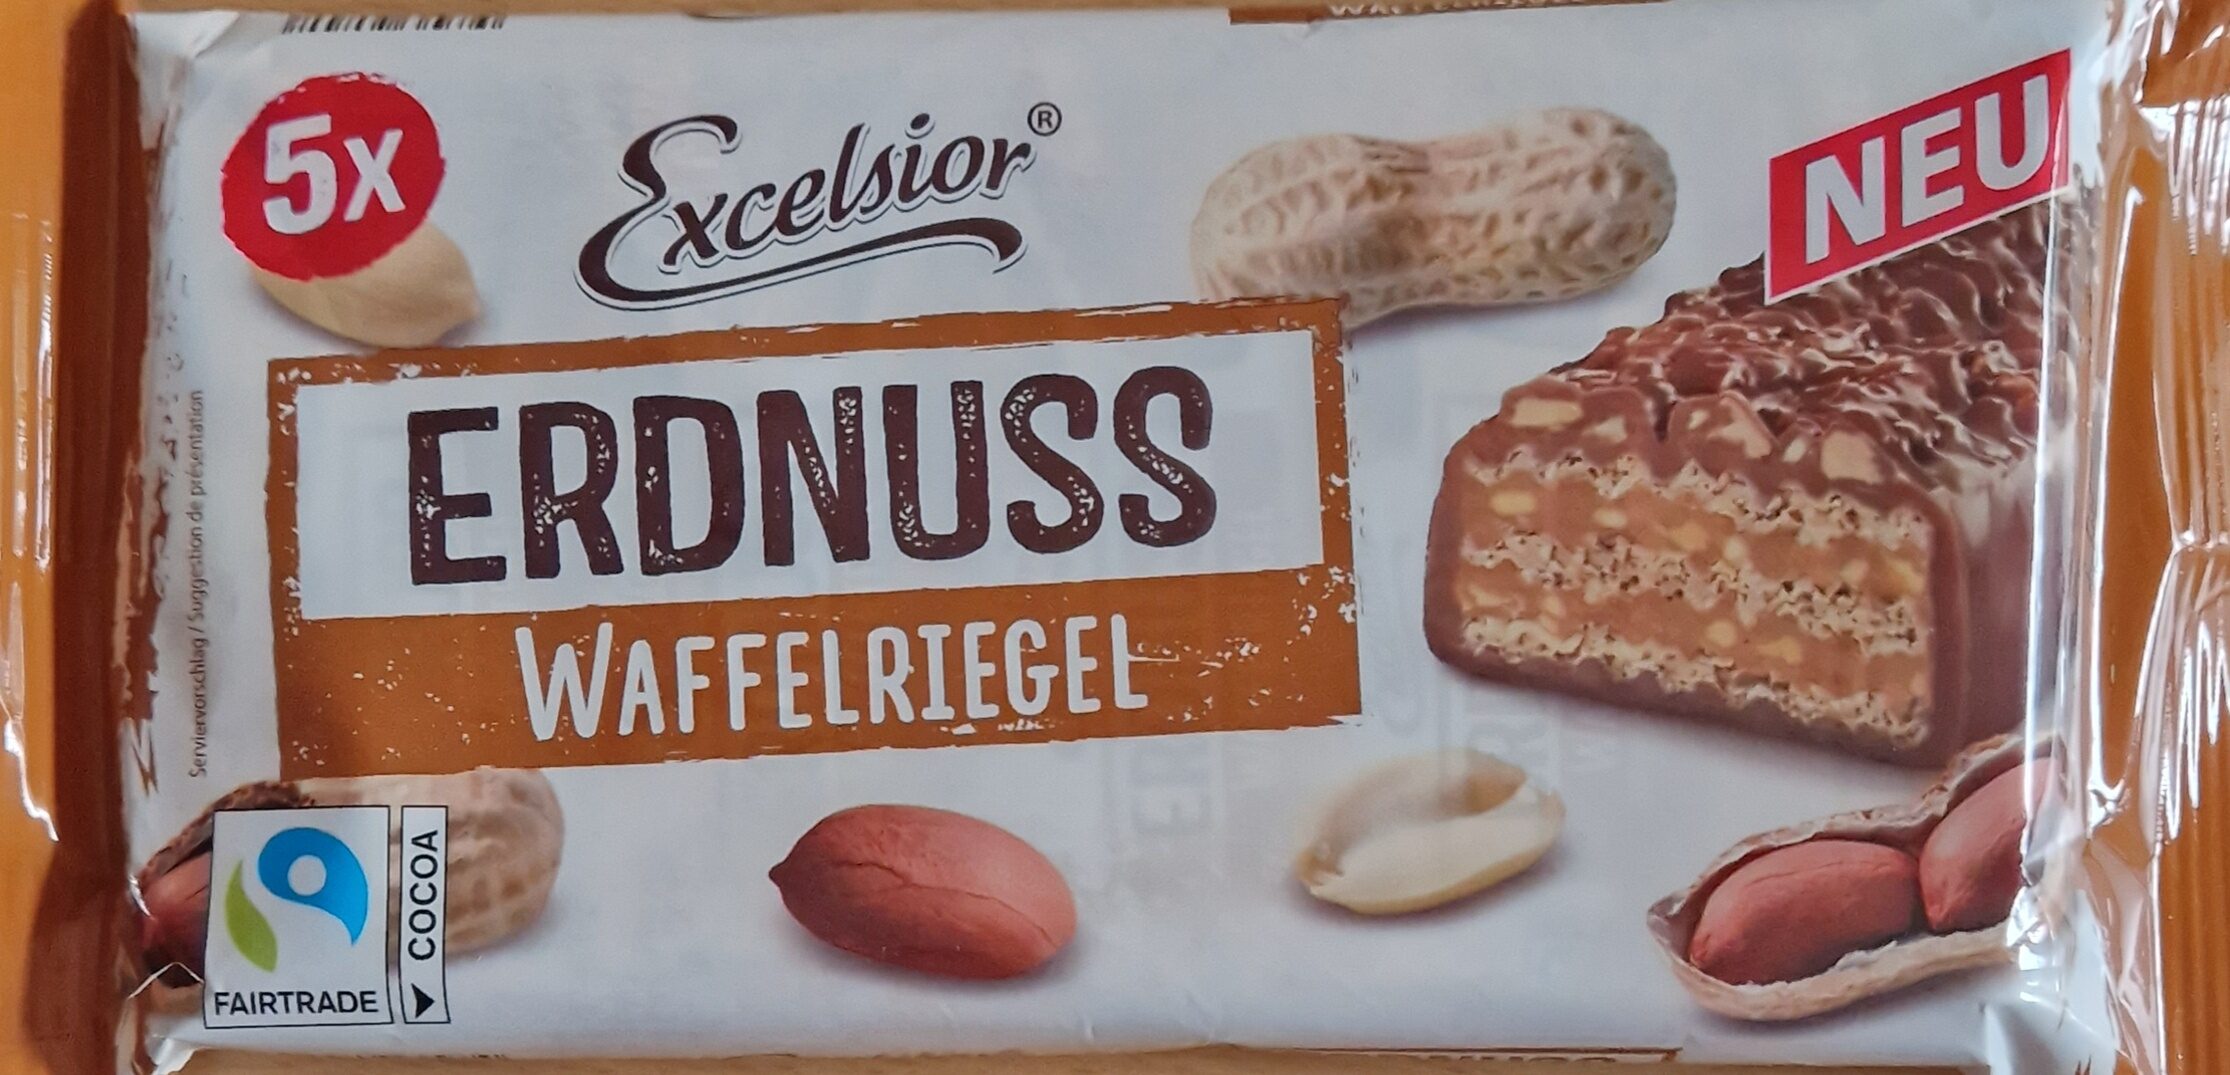 ERDNUSS WAFFELRIEGEL - Product - de